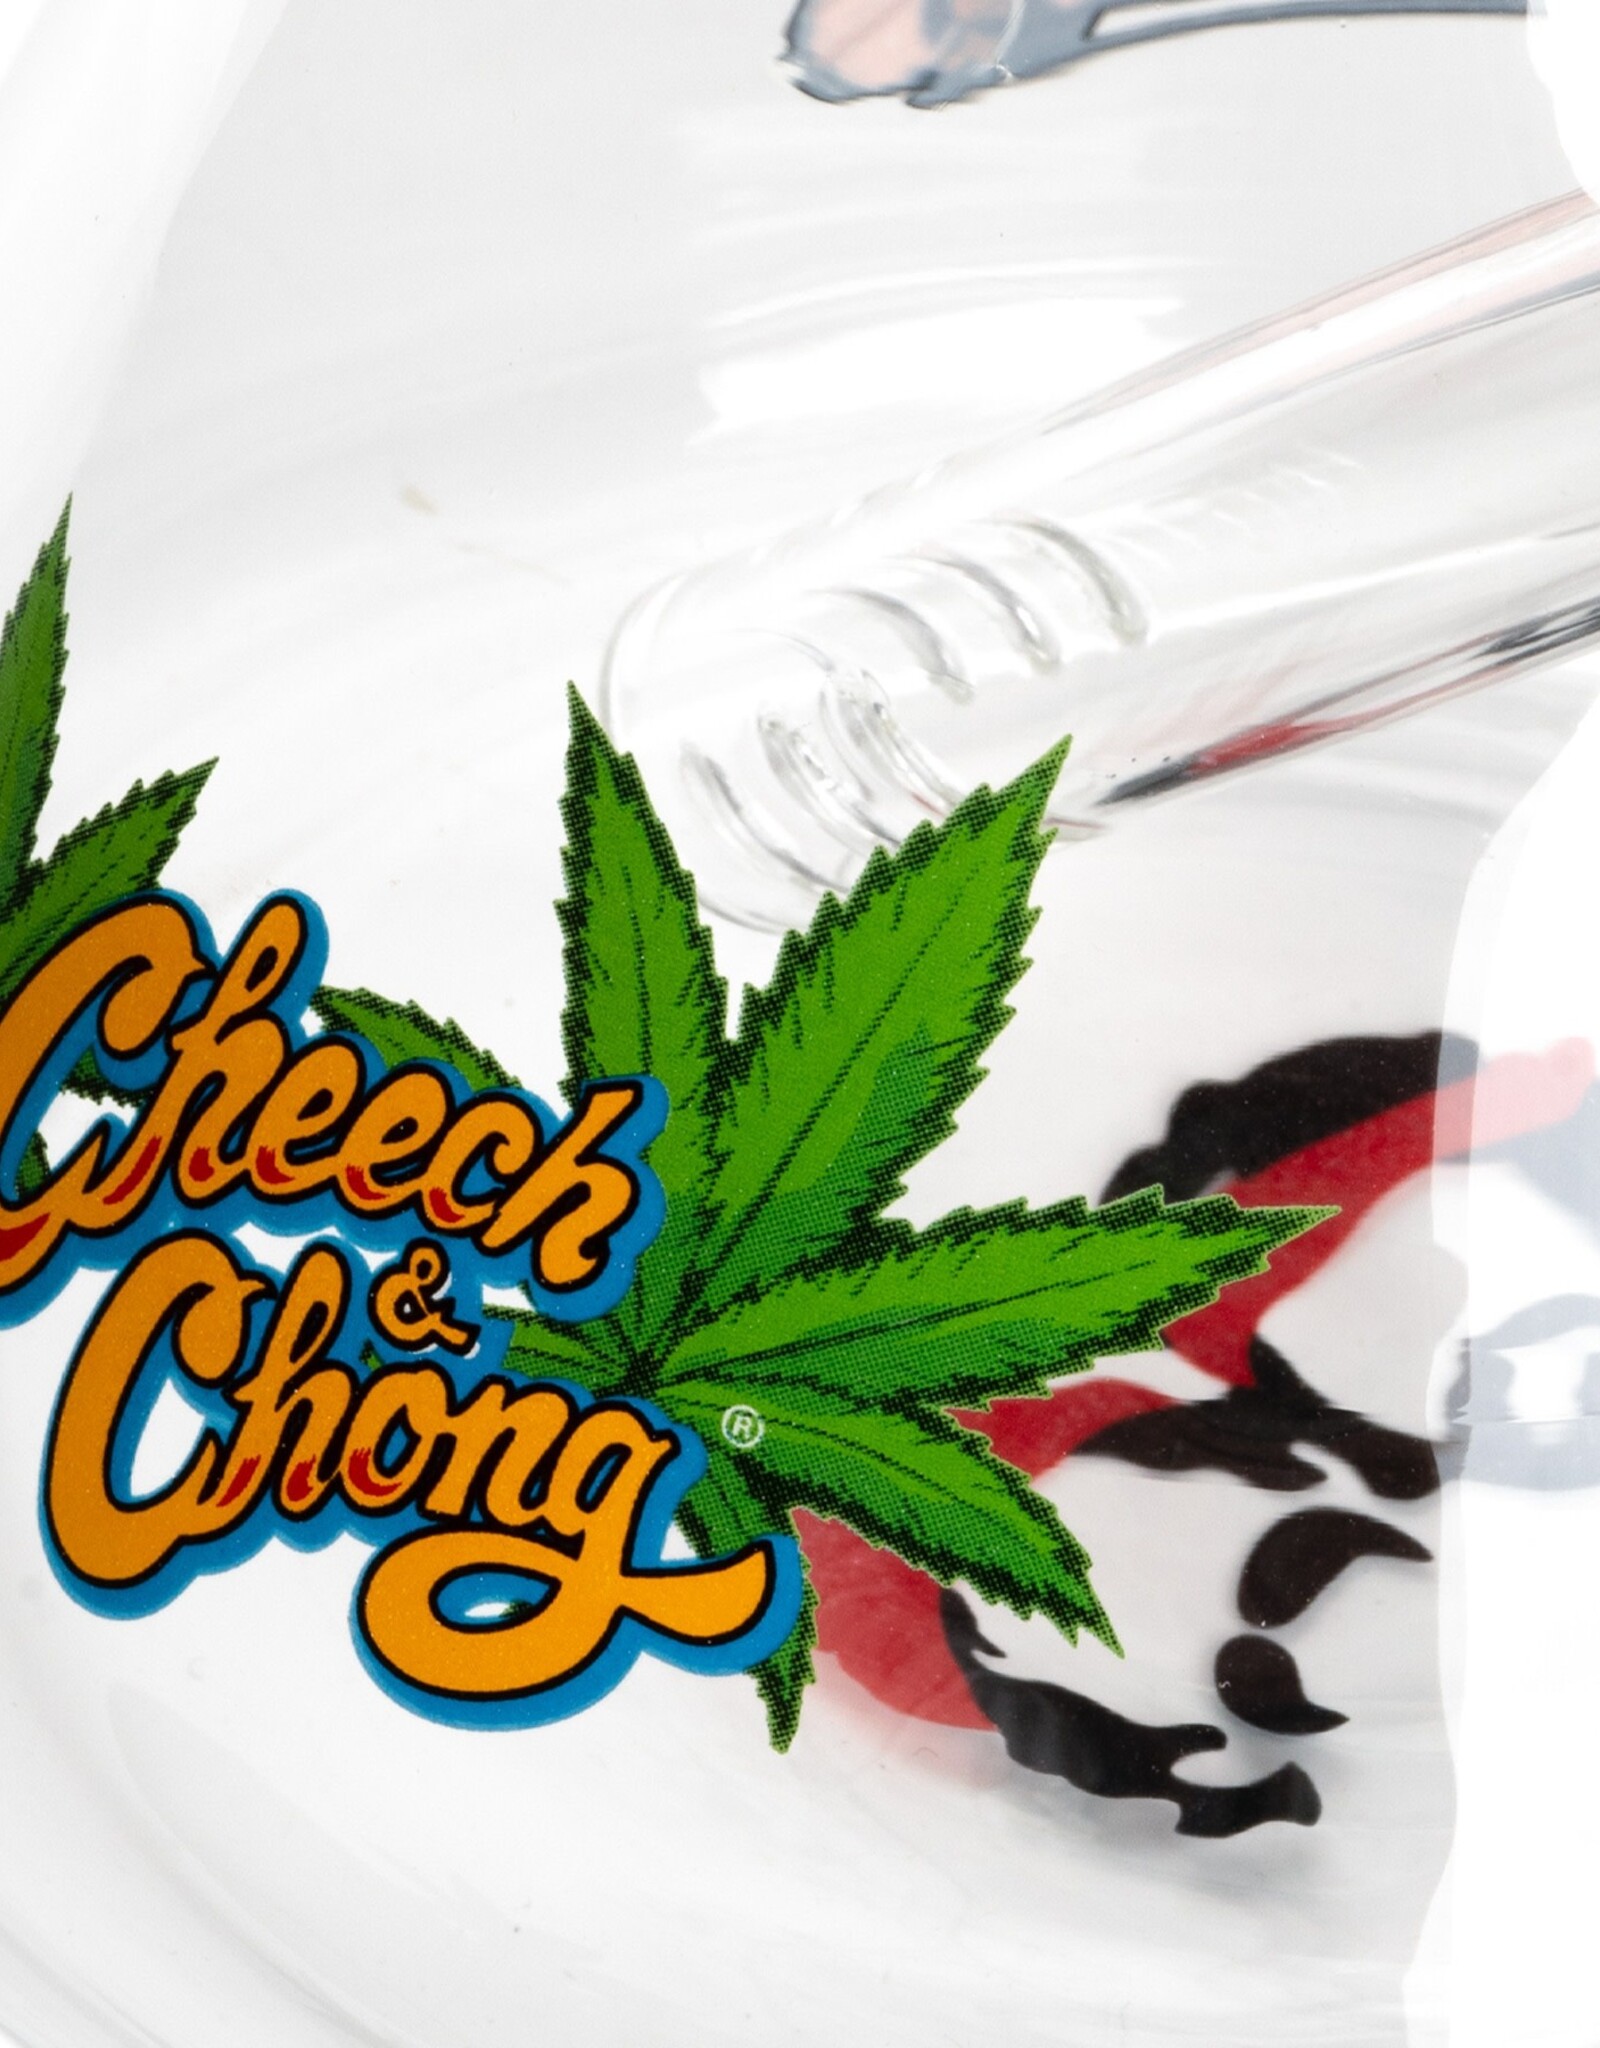 15" Pop Art Beaker by Cheech & Chong Glass